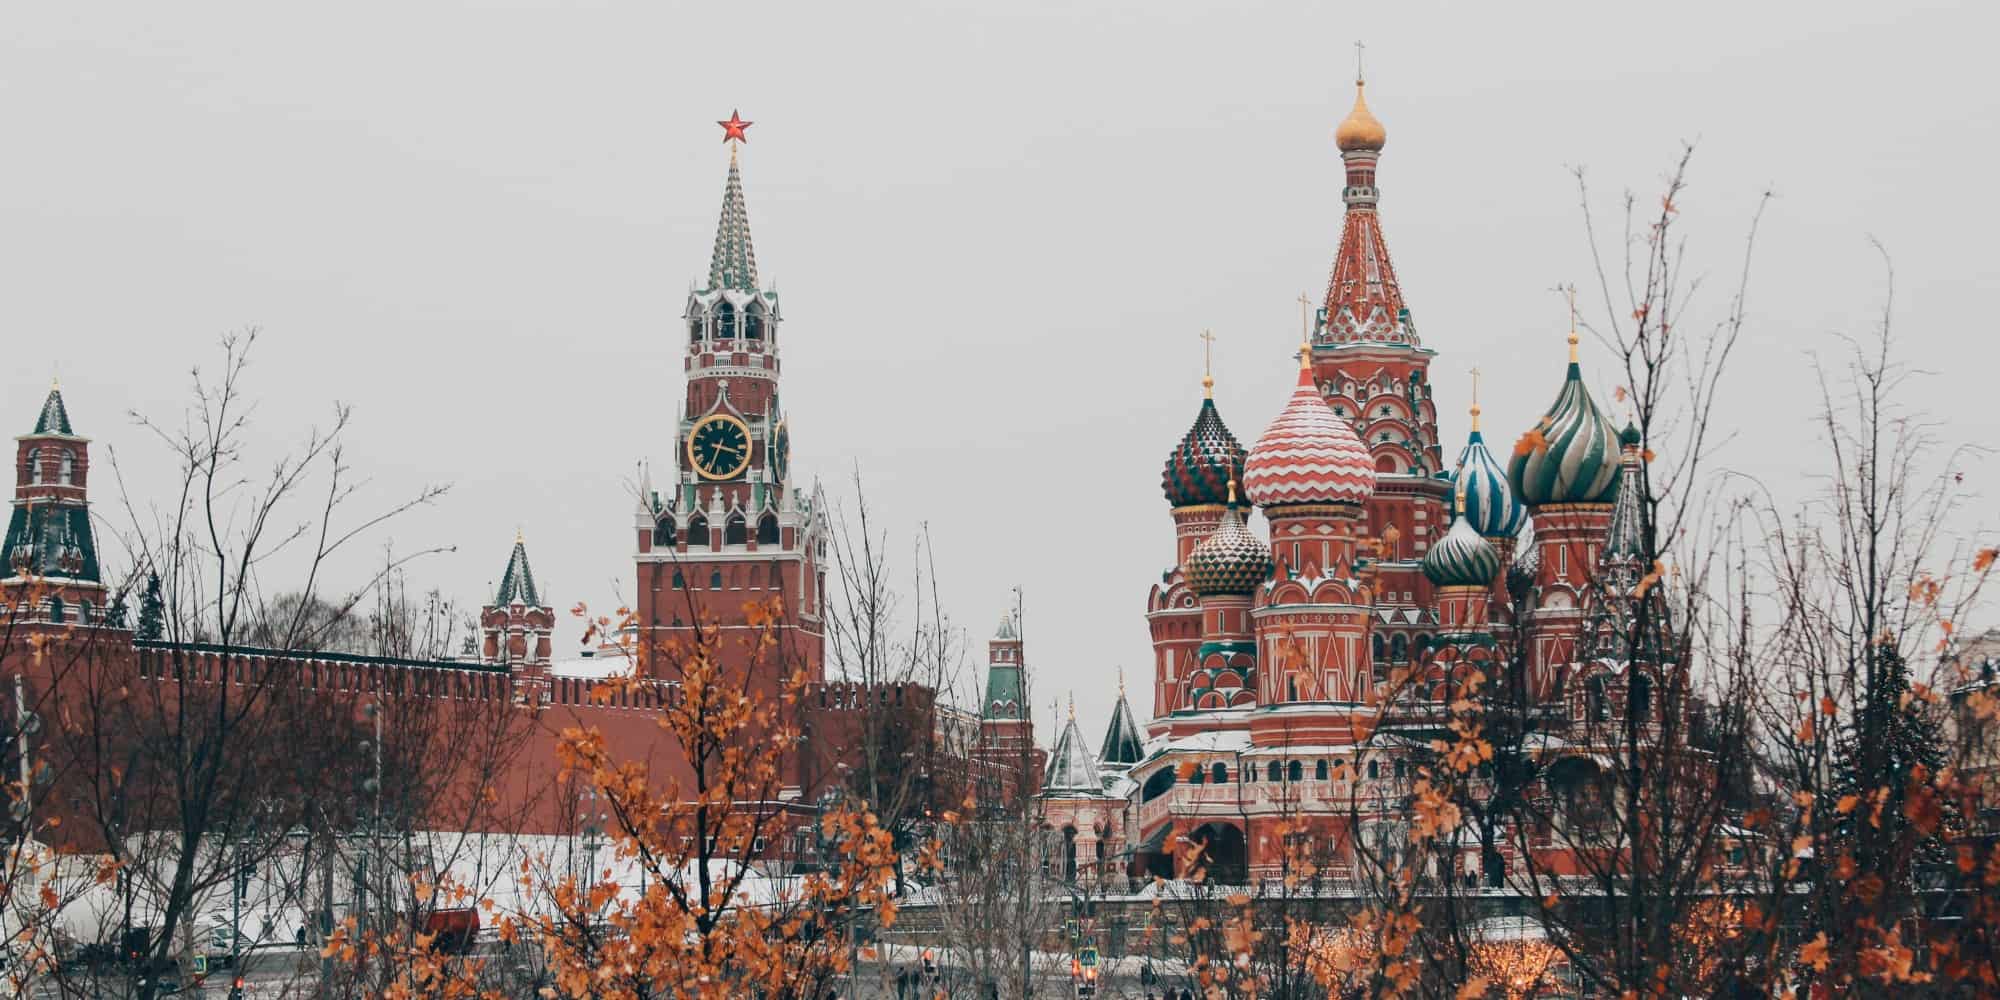 Το Κρεμλίνο στη Ρωσία